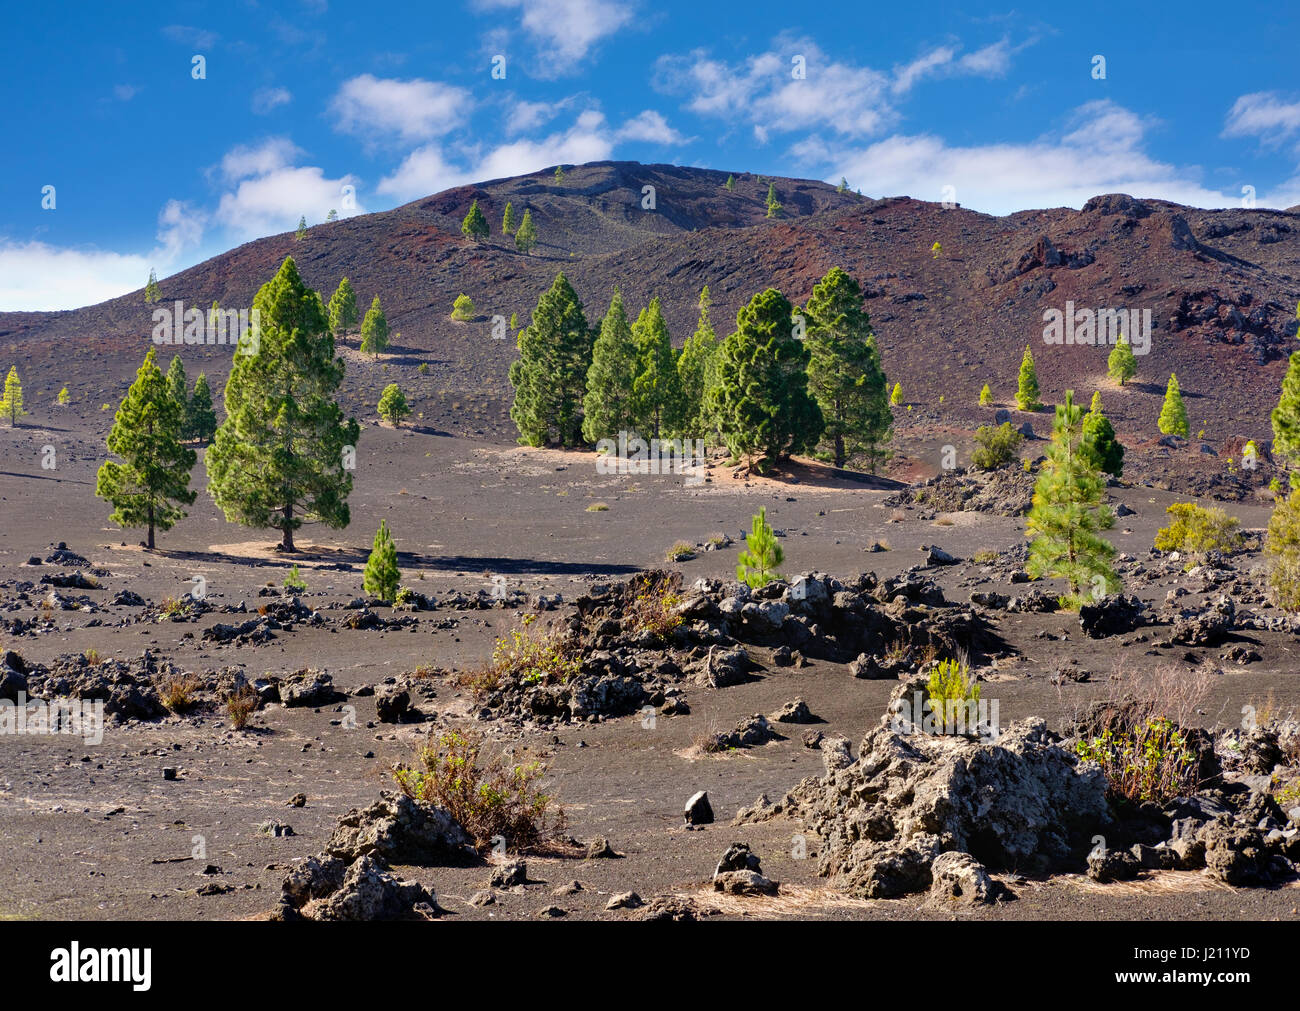 Montana Negra oder Volcan Garachico, bei El Tanque, Teneriffa, Kanarische Inseln, Spanien Stock Photo